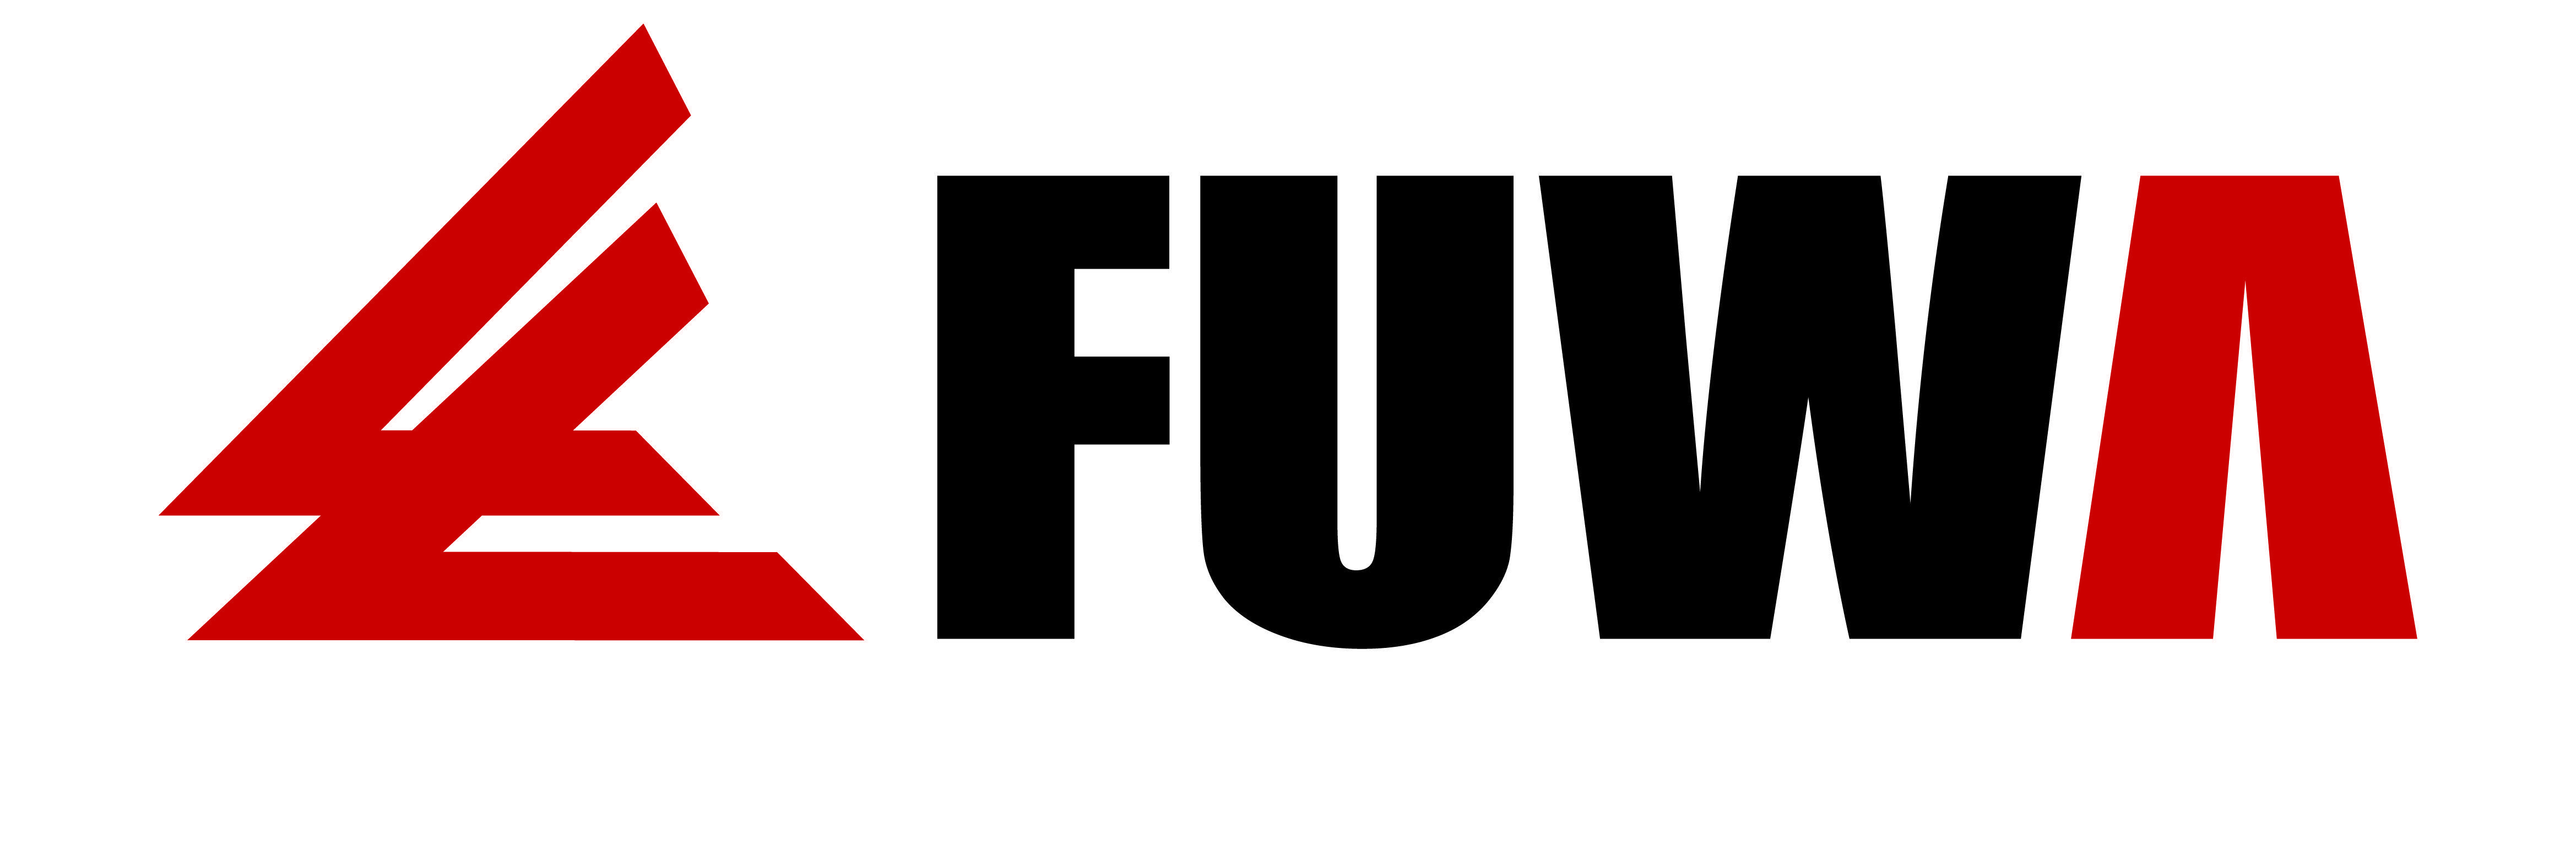 Fuwa Logo - JP Nelson - FUWA